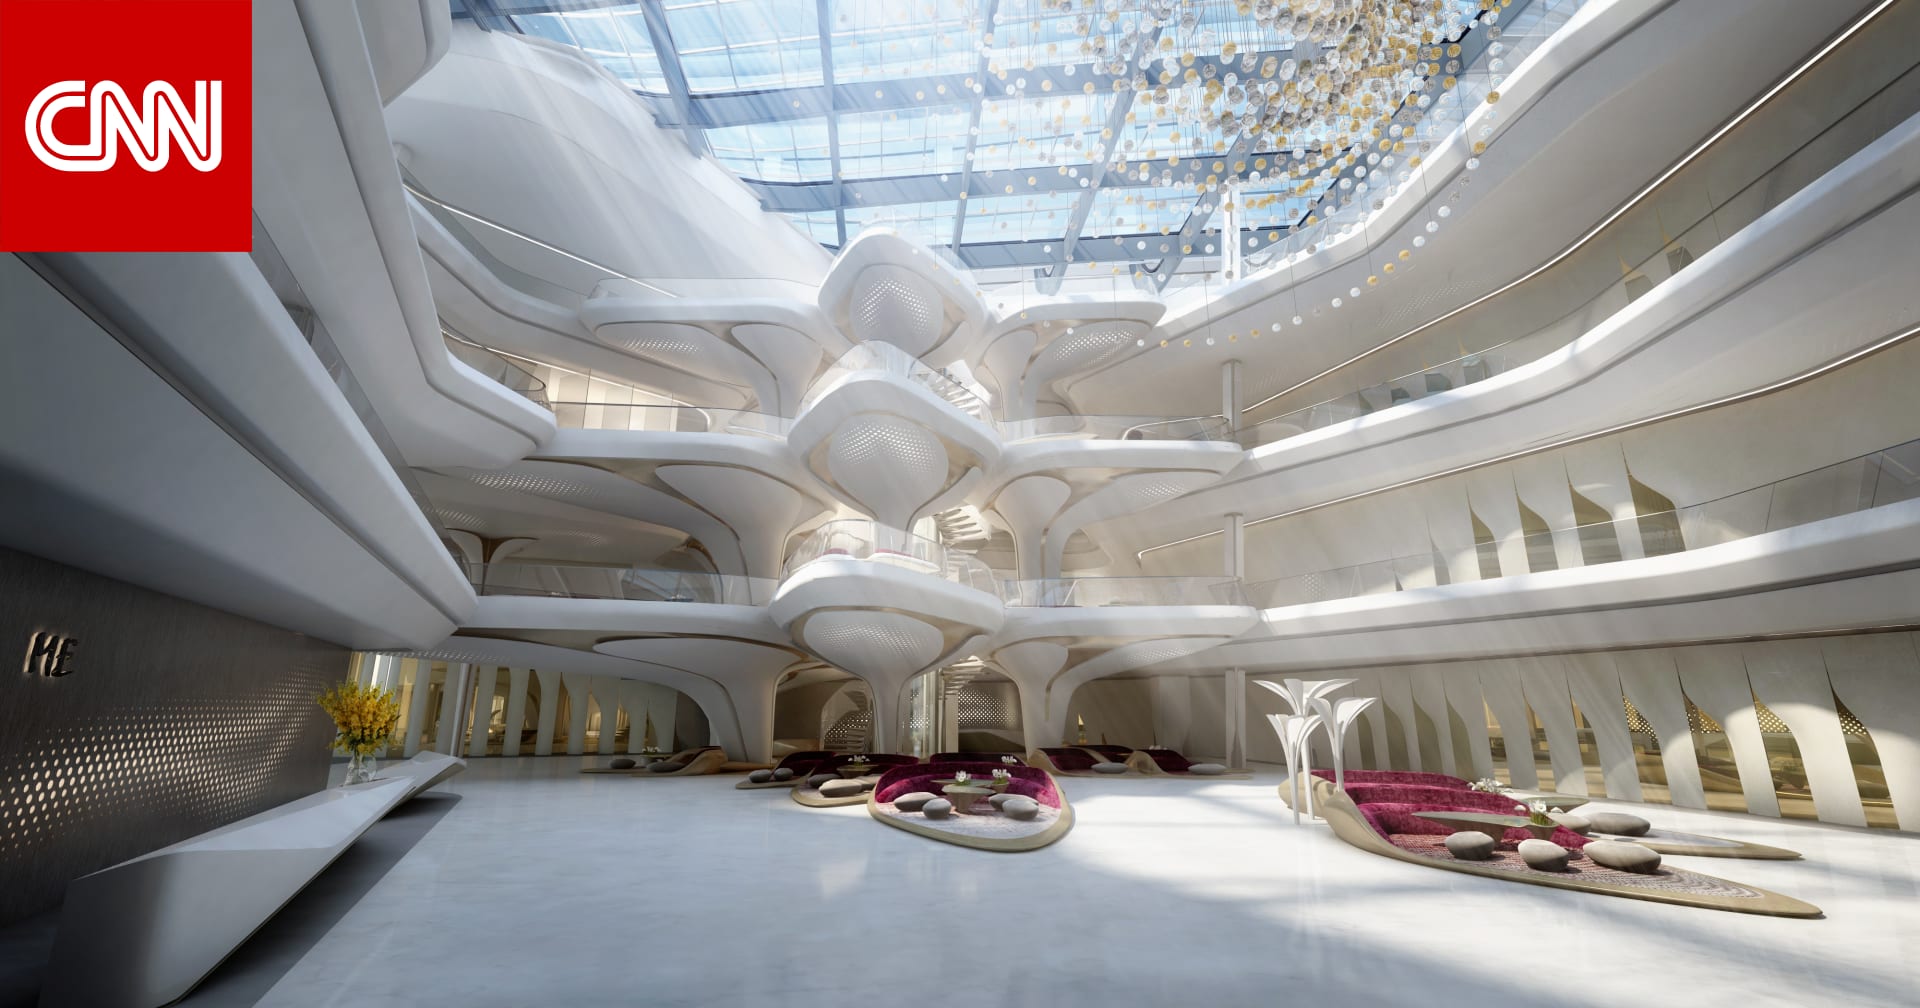 فندق من تصميم الراحلة زها حديد في دبي قريبا - CNN Arabic